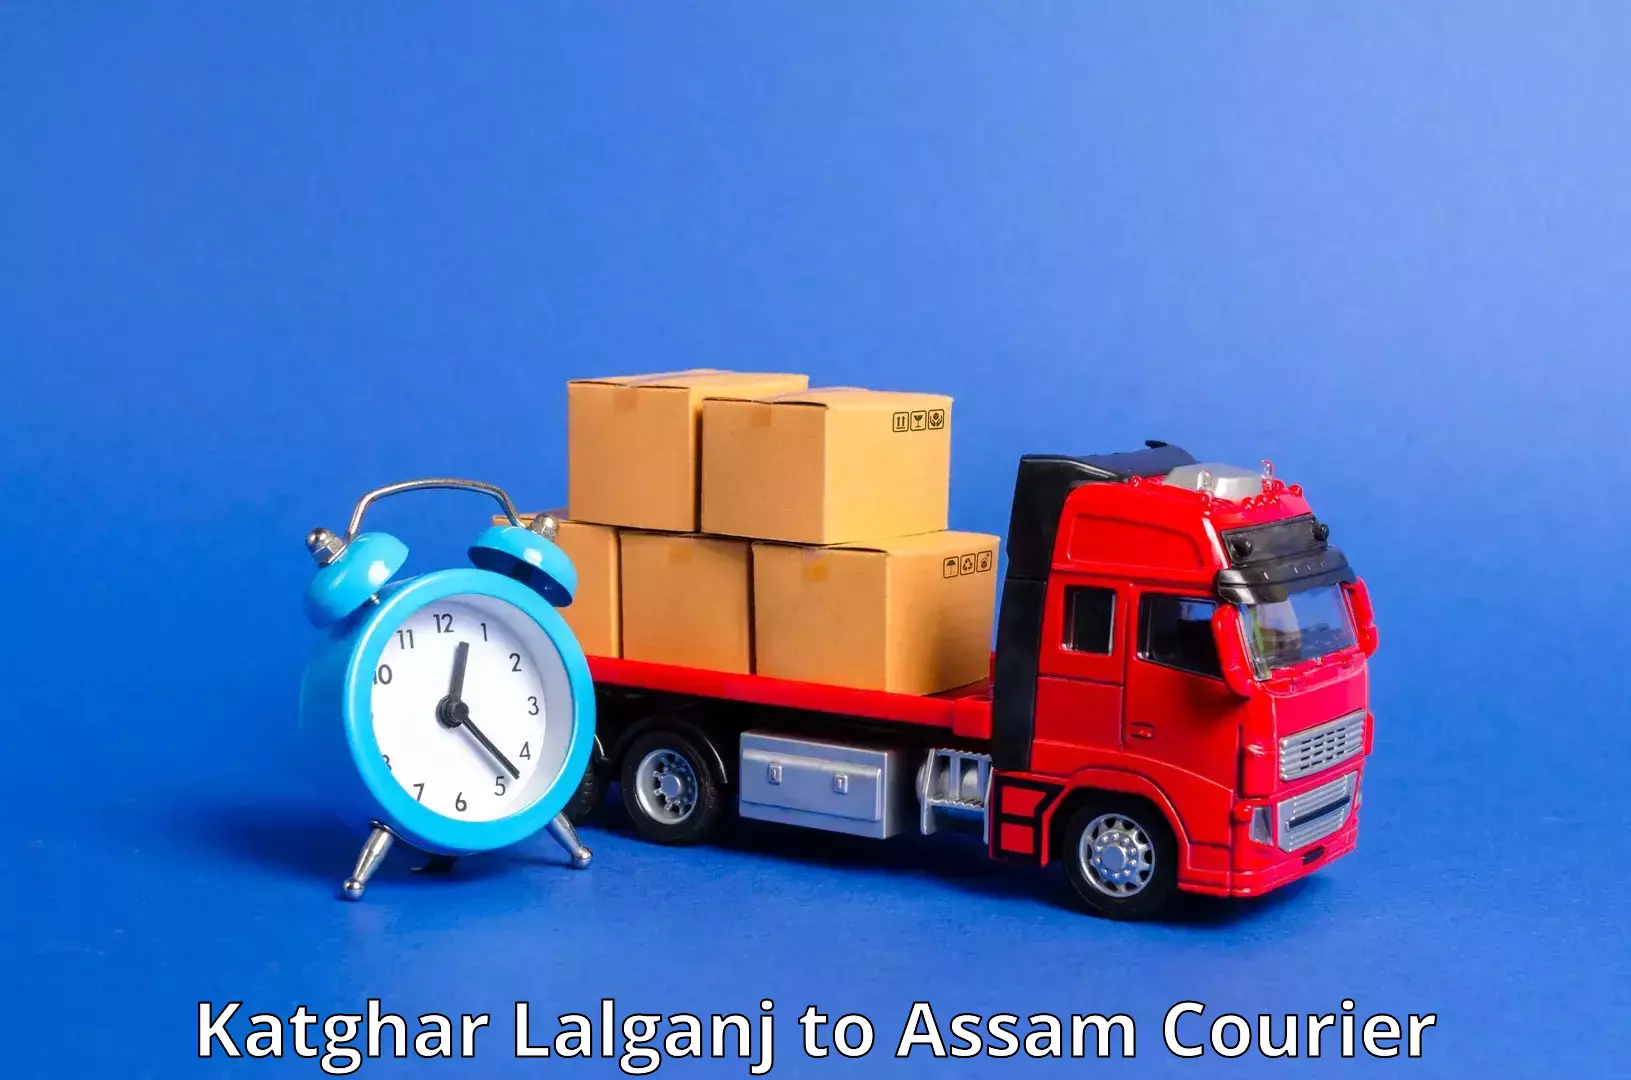 Next-day freight services Katghar Lalganj to Nazira